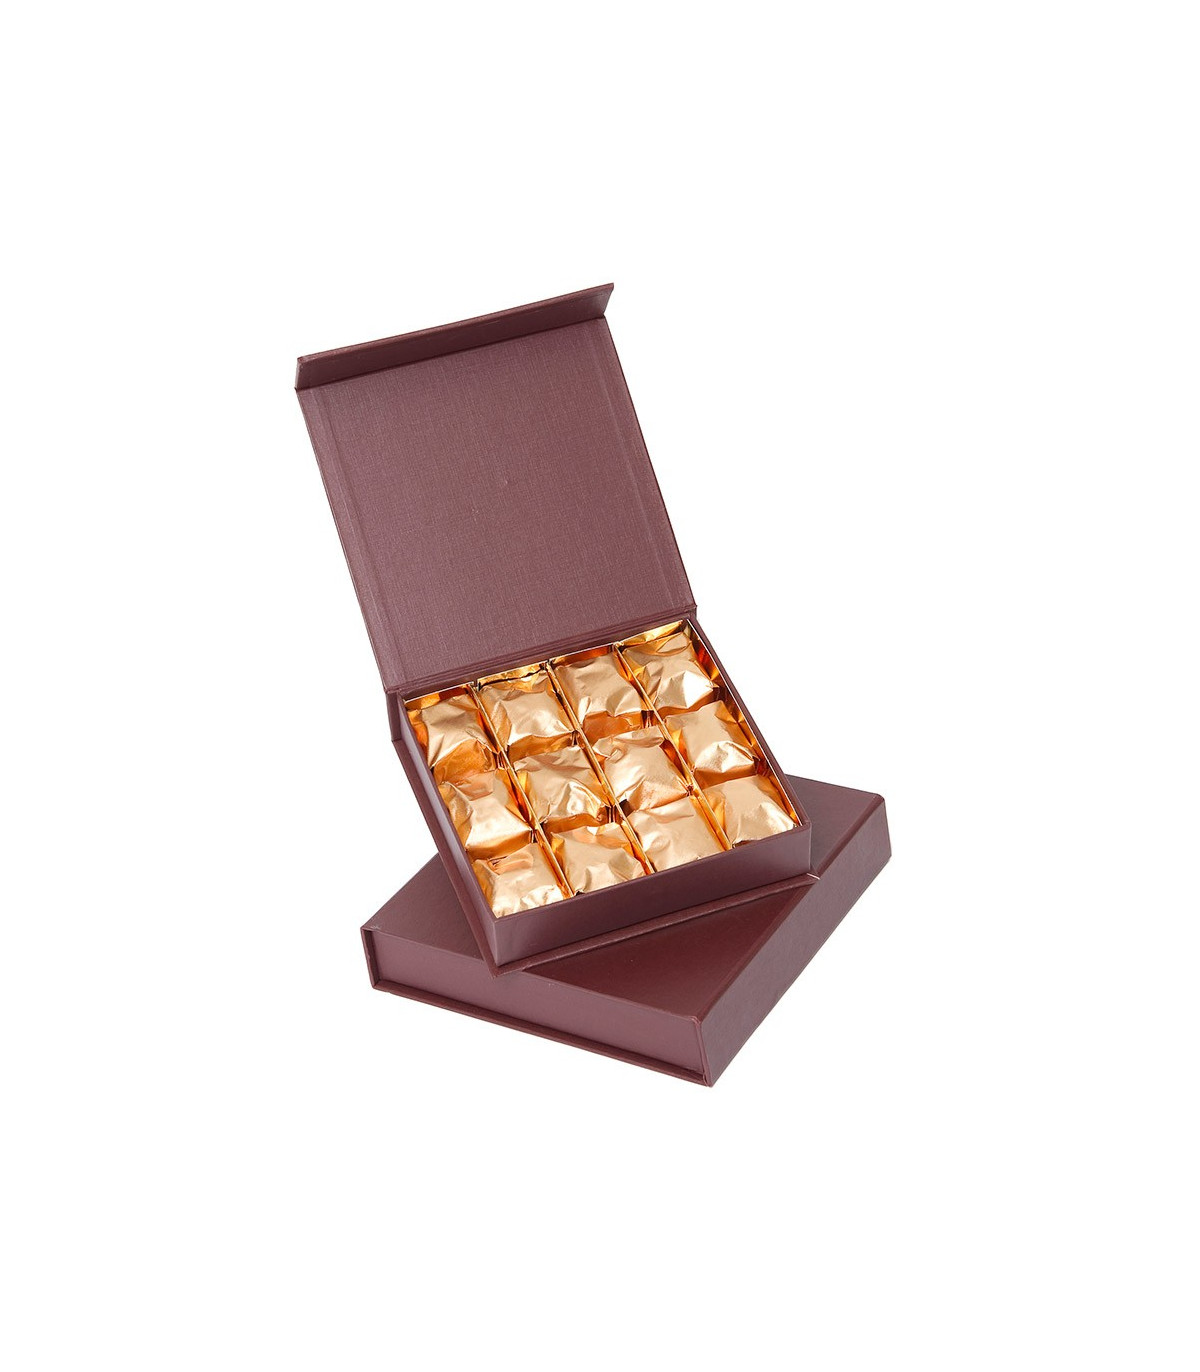 Cadeau exceptionnel avec chocolats artisanaux et marrons glacés